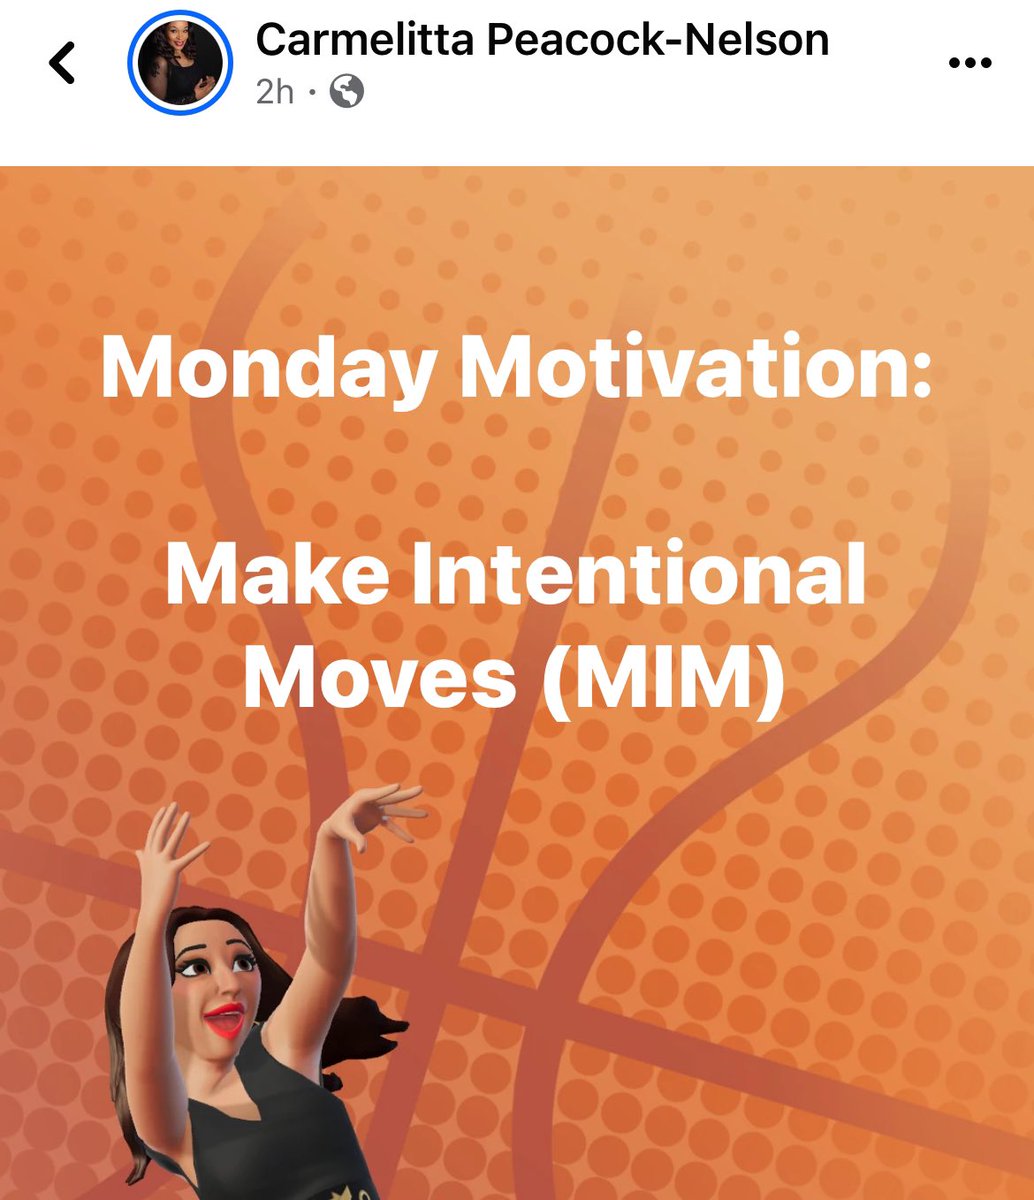 #HappyMonday #MondayMood #MondayMorning #MondayVibes #MondayMotivaton #Monday #Motivation #InspirationalQuotes #Quotes #HustleMonday #GodMorningMonday #CarmiesNotes